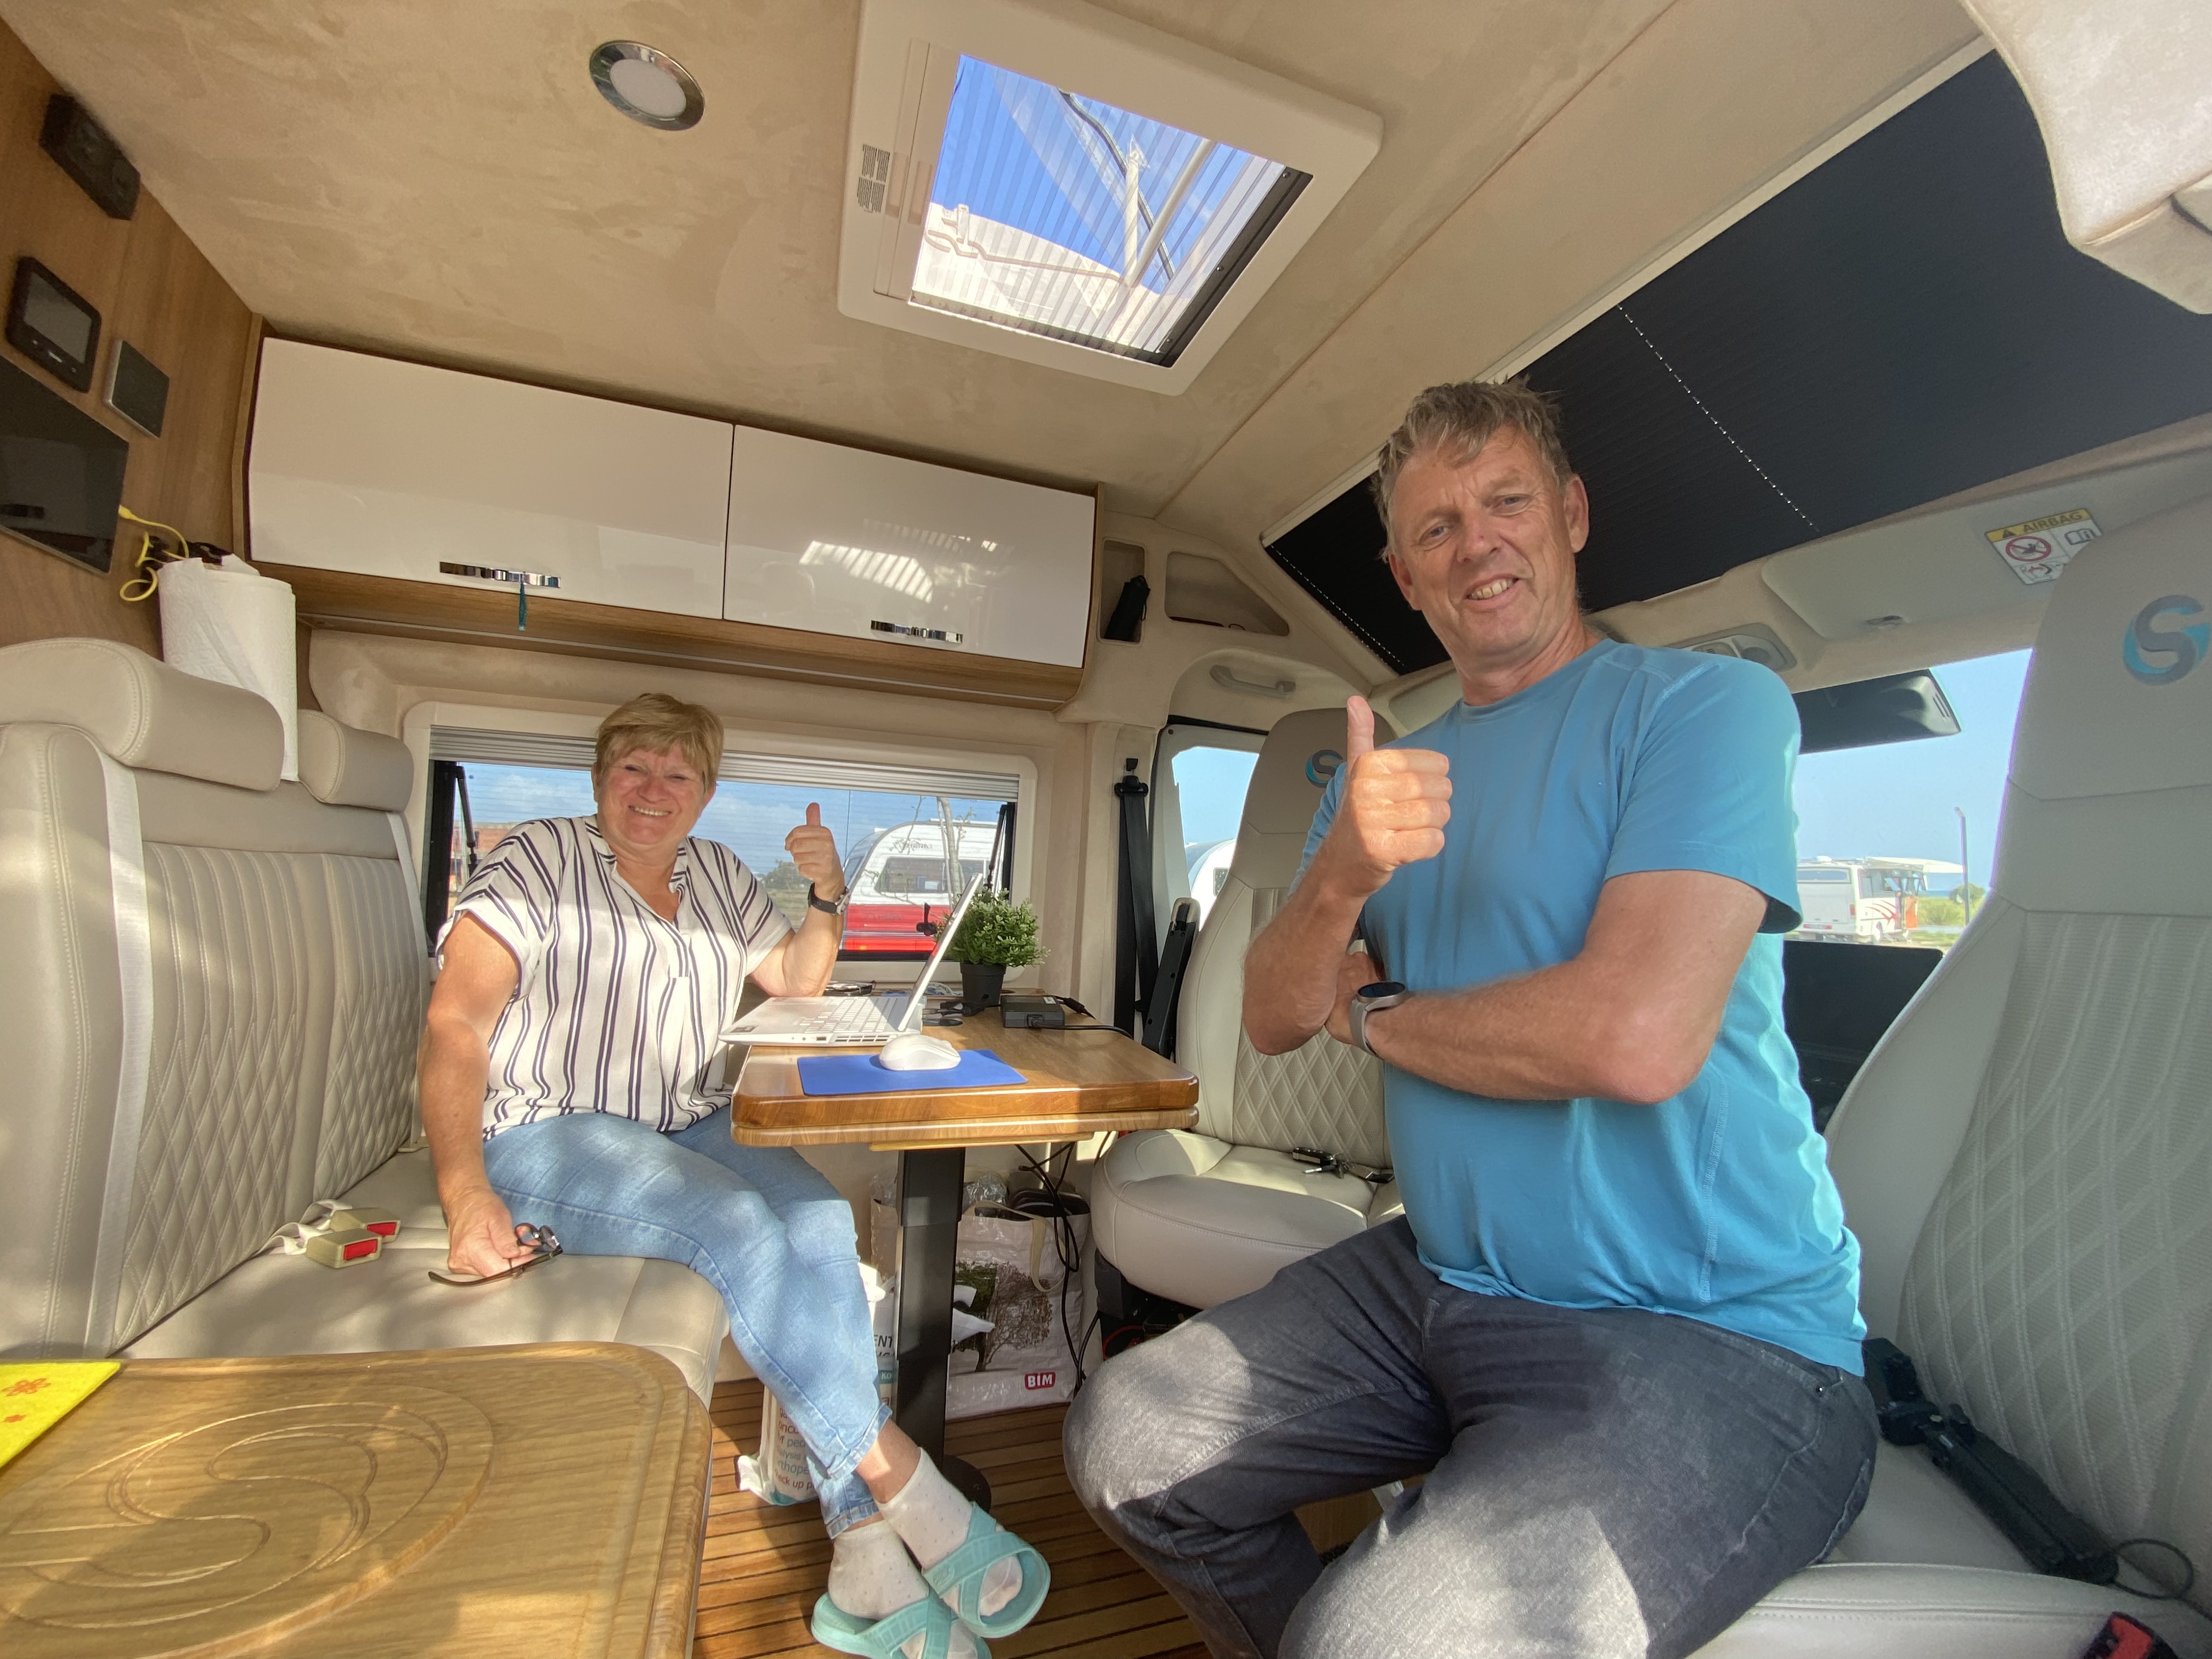 Hollandalı çift, evlerini satıp aldıkları karavanla 5 yıldır Türkiye’de yaşıyor